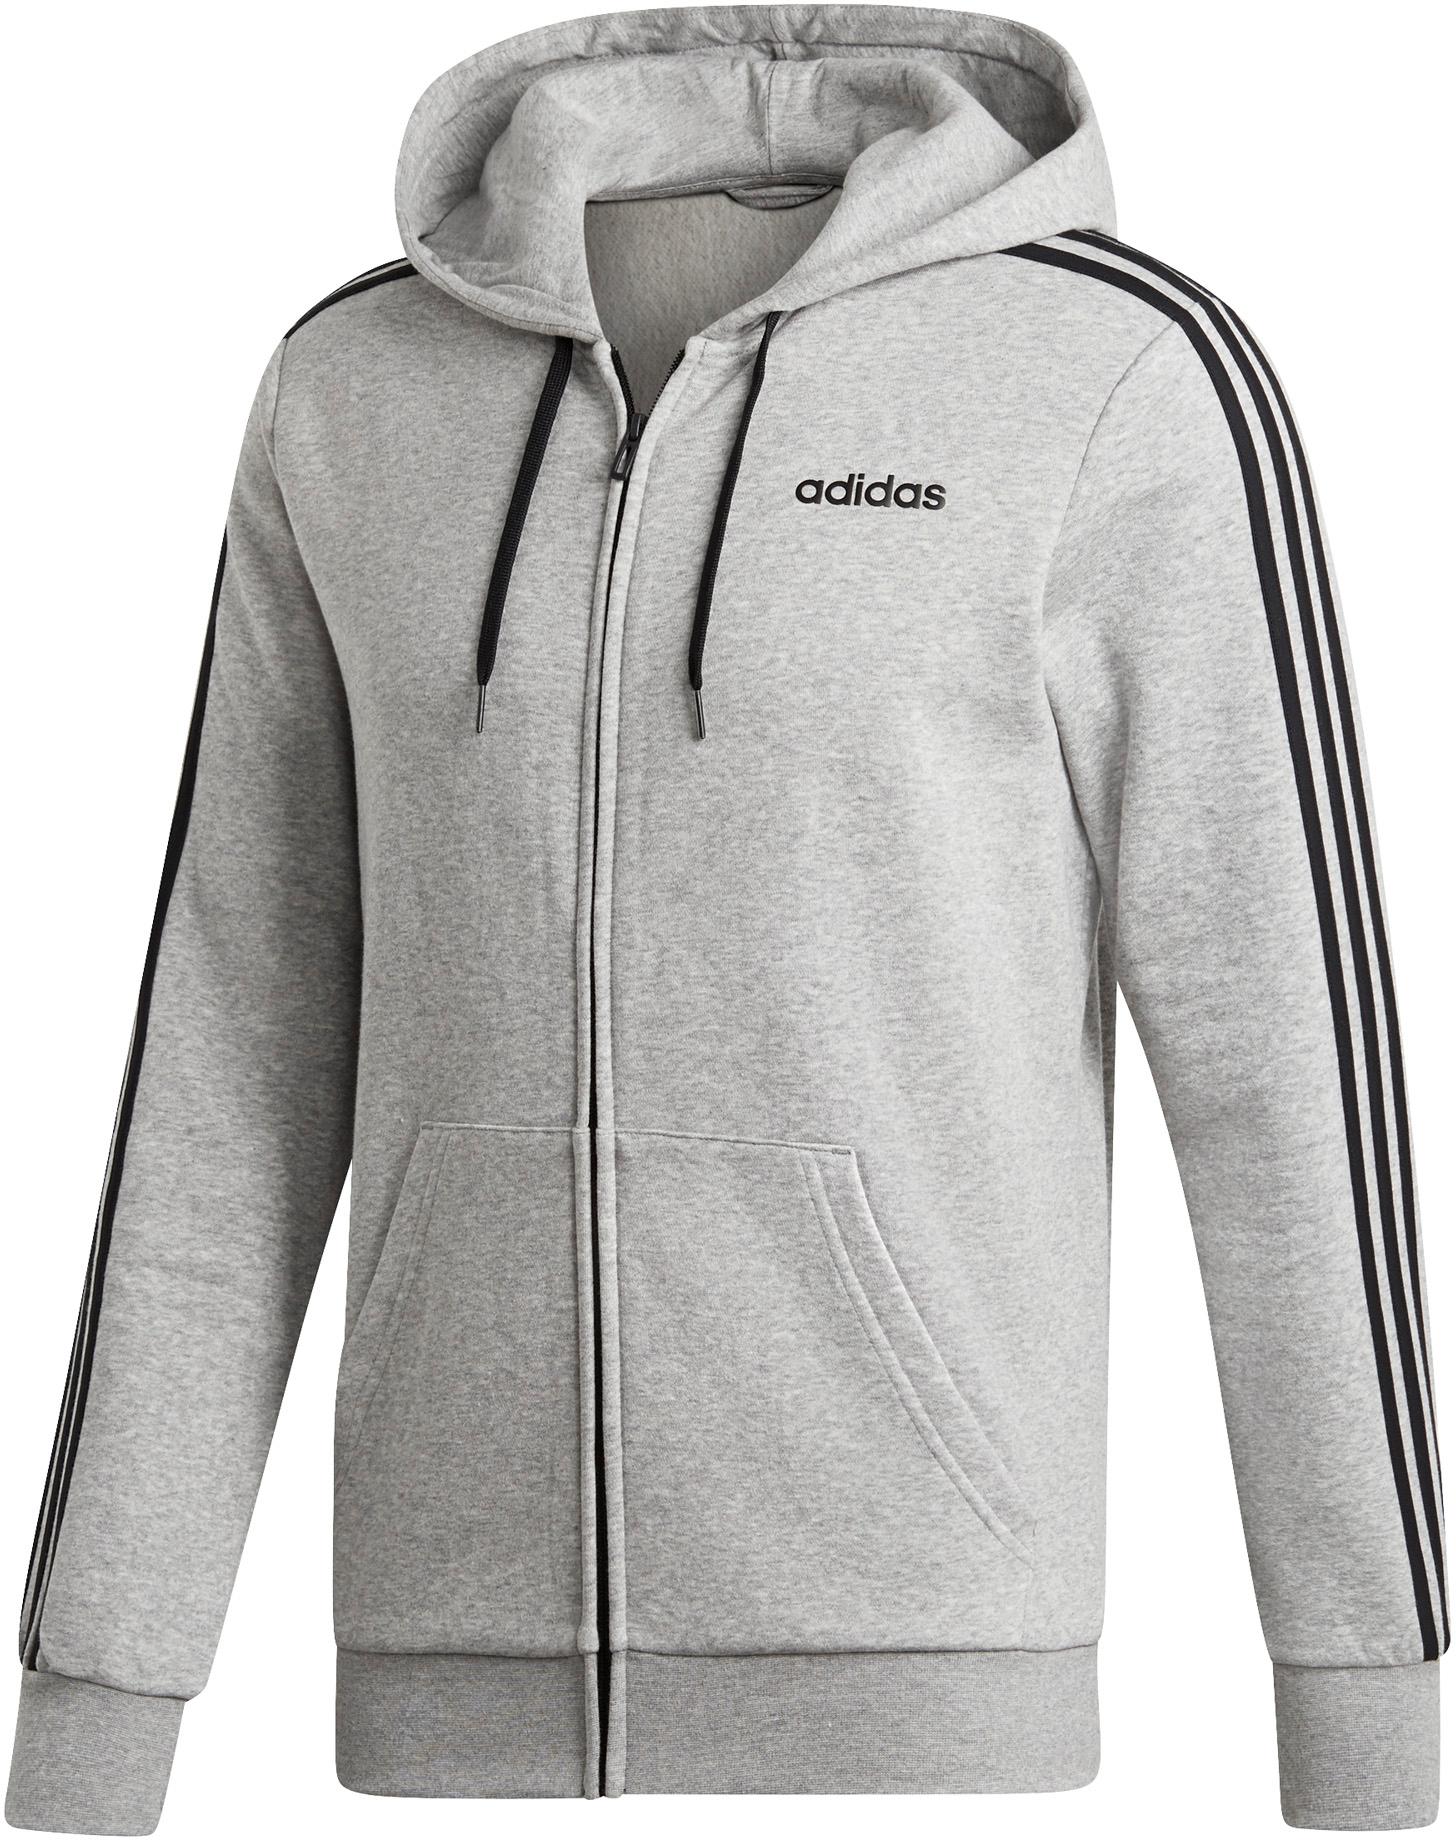 Jacken Fur Herren Von Adidas Im Online Shop Von Sportscheck Kaufen